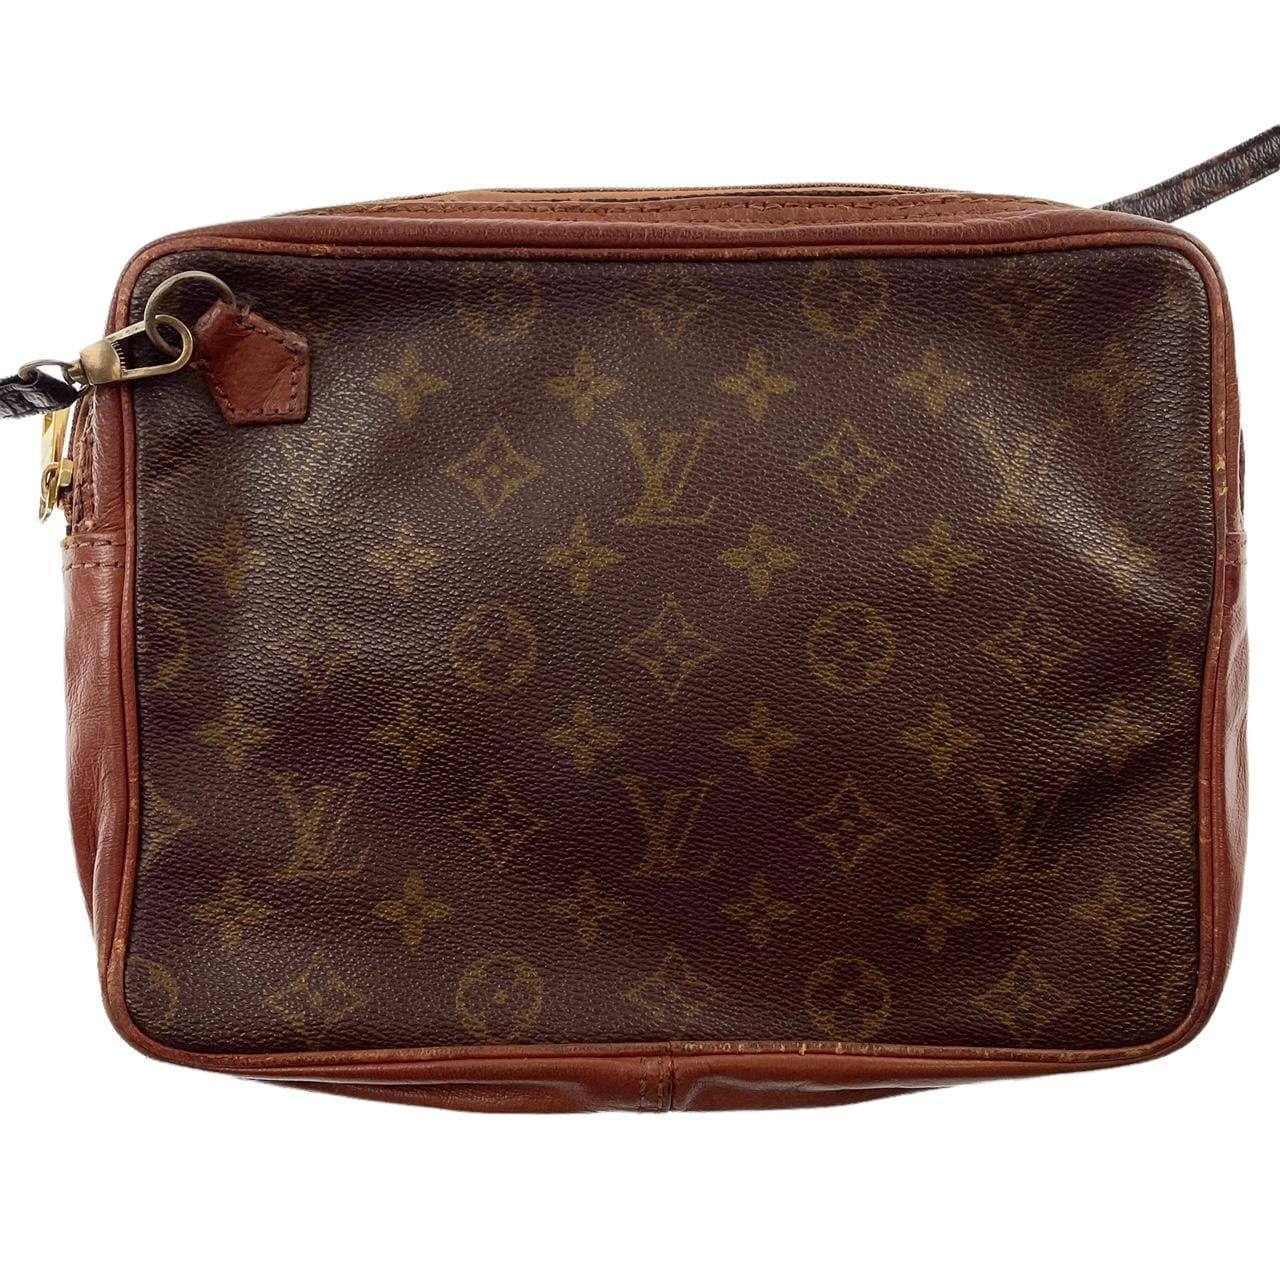 Vintage Louis Vuitton monogram cross body bag - second wave